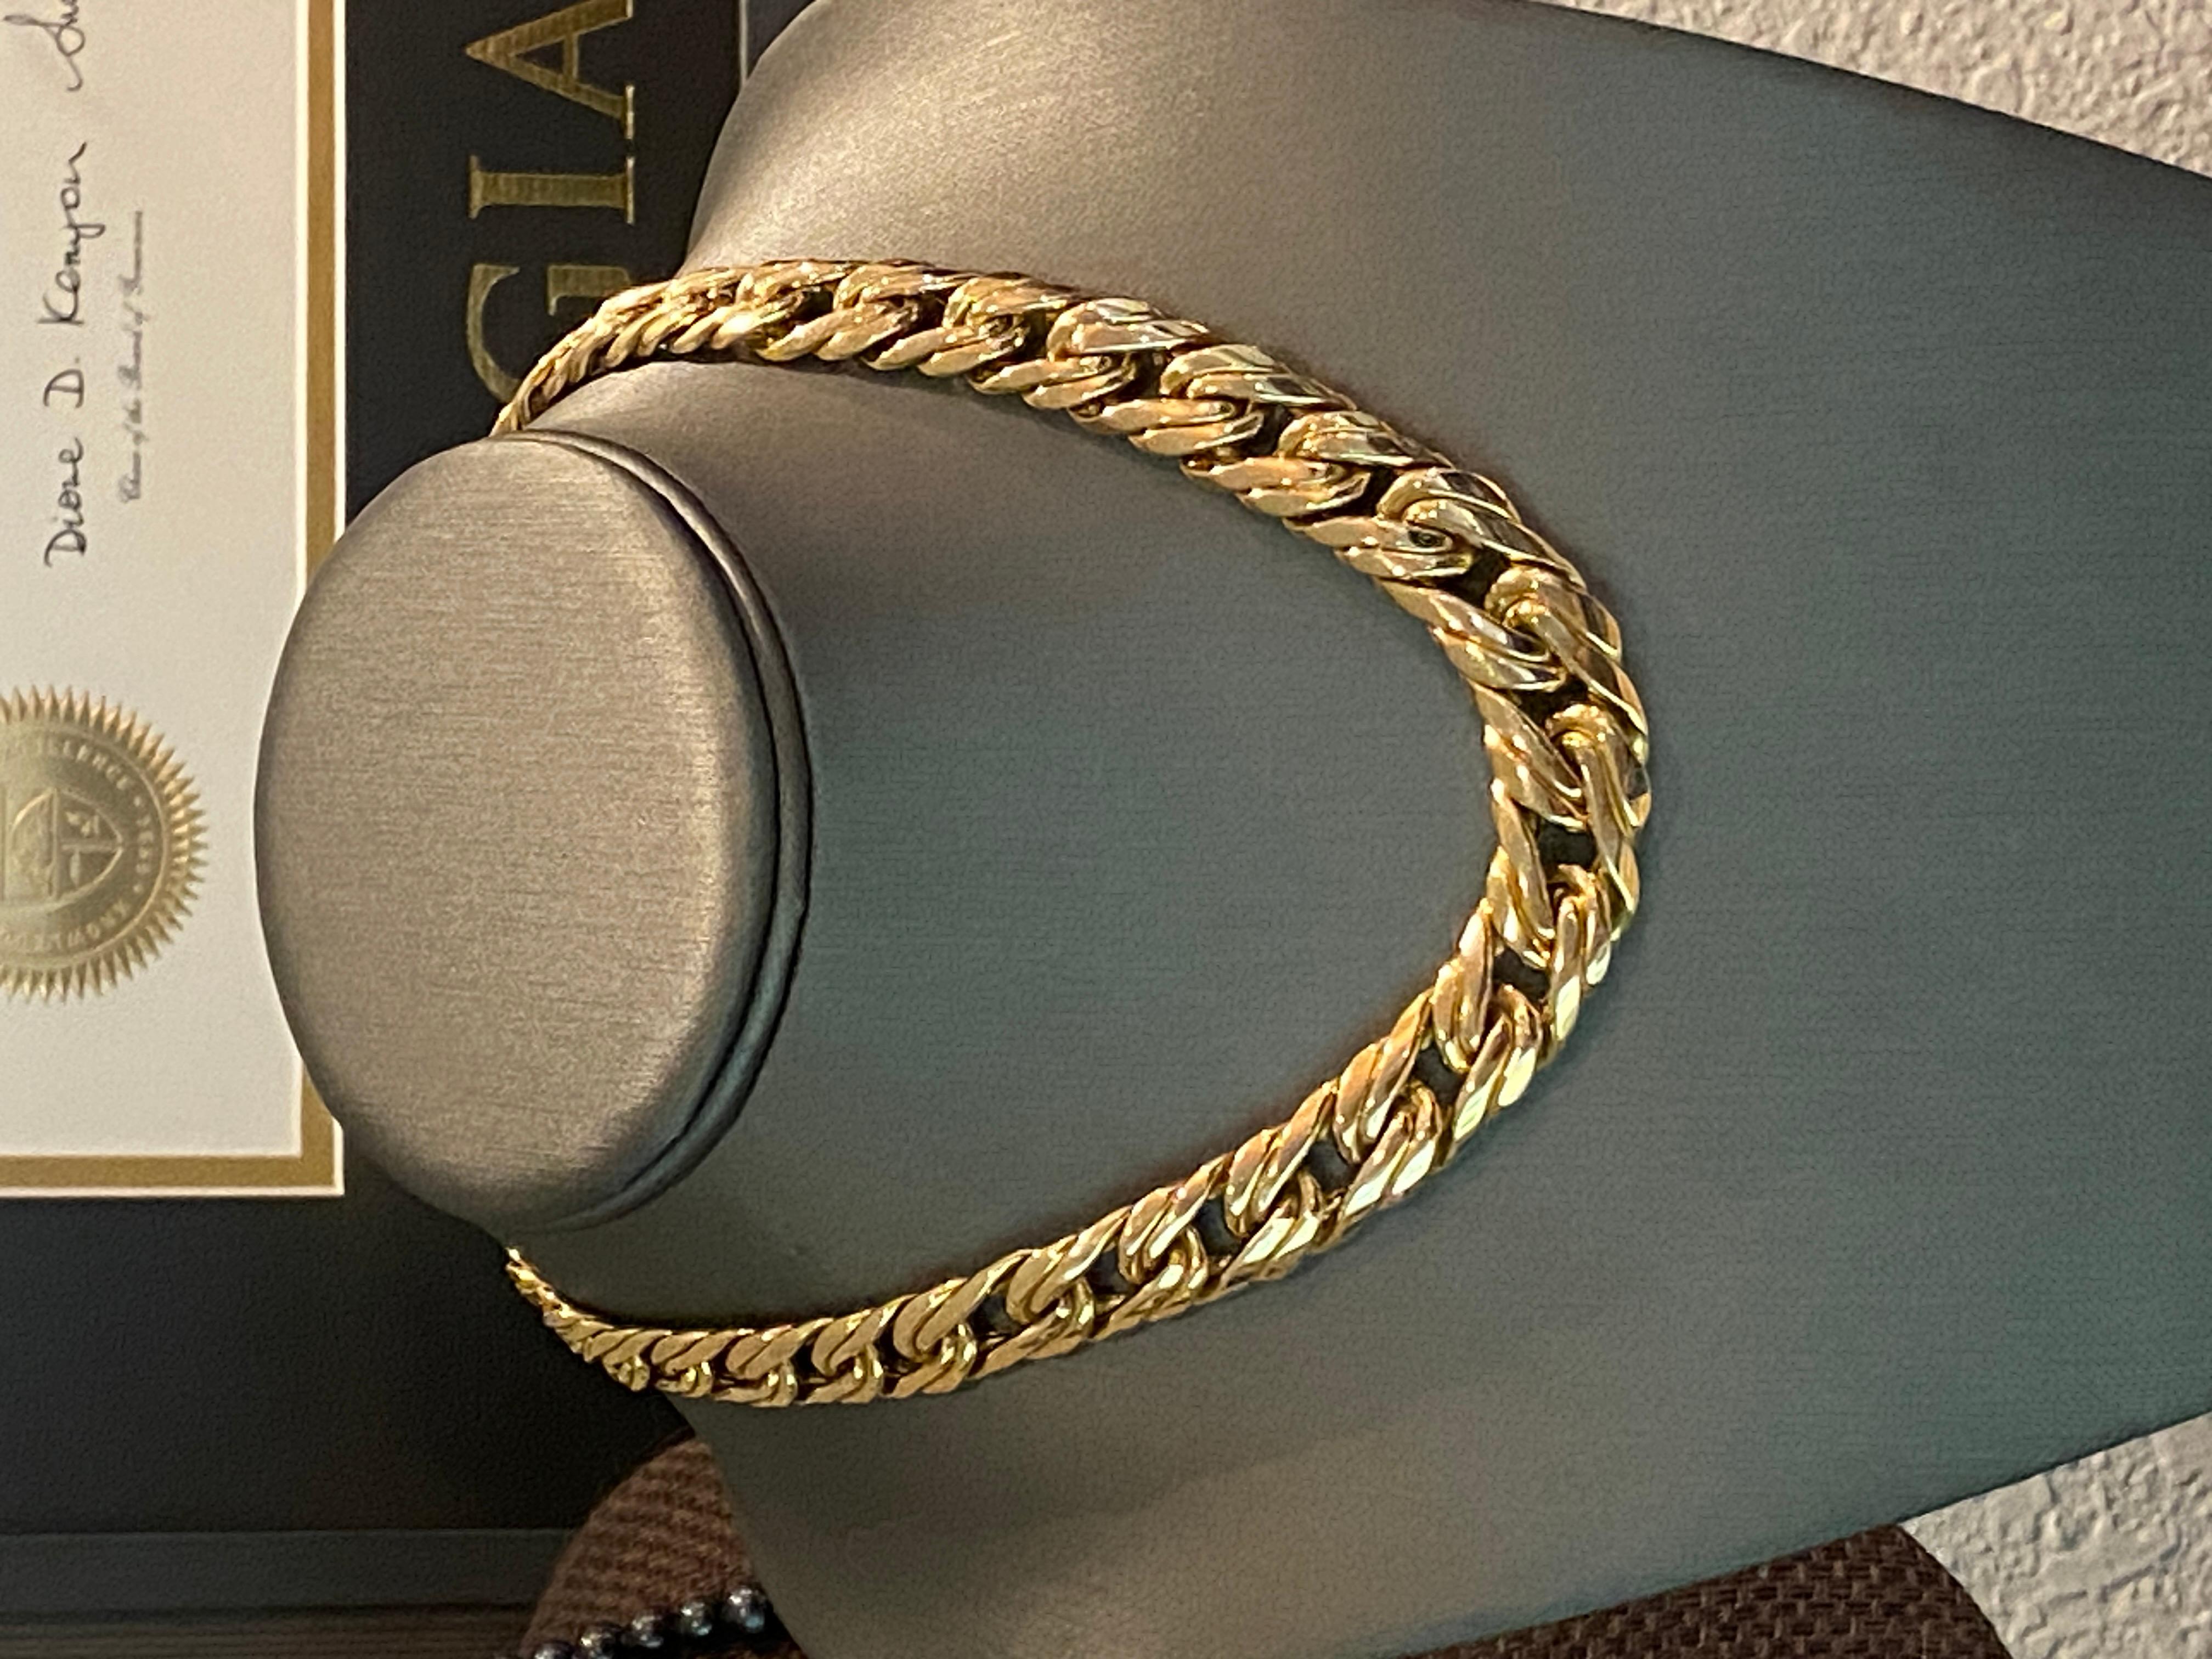 Women's Zelman and Friedman 14k Woven Gold Necklace